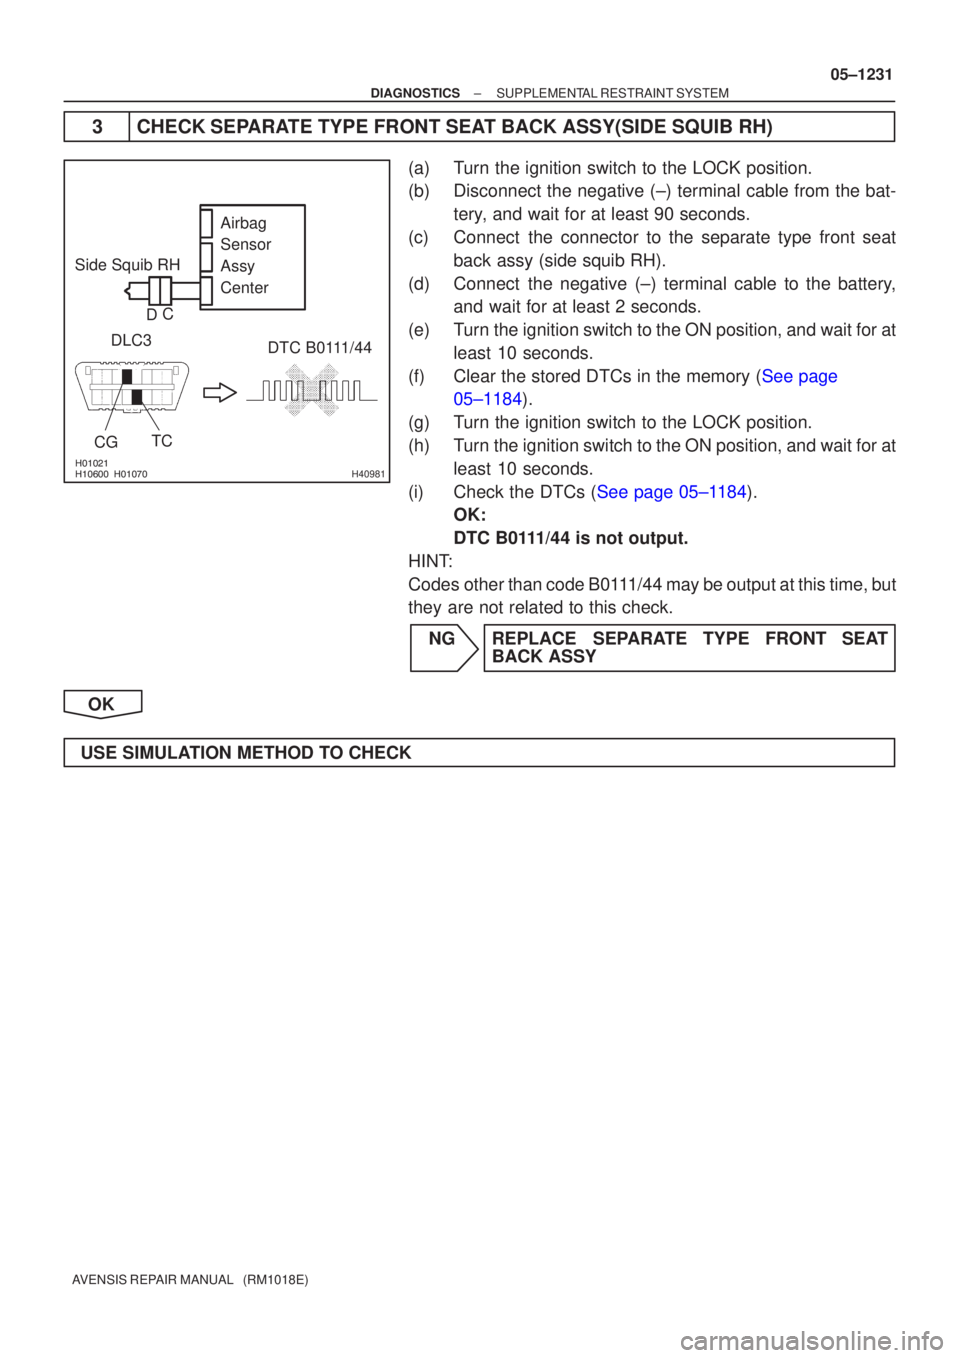 TOYOTA AVENSIS 2005  Service Repair Manual 
H40981
Side Squib RHDTC B0111/44
DLC3
CG TC Airbag 
Sensor 
Assy
Center
D C
±
DIAGNOSTICS SUPPLEMENTAL RESTRAINT SYSTEM
05±1231
AVENSIS REPAIR MANUAL   (RM1018E)
3CHECK SEPARATE T